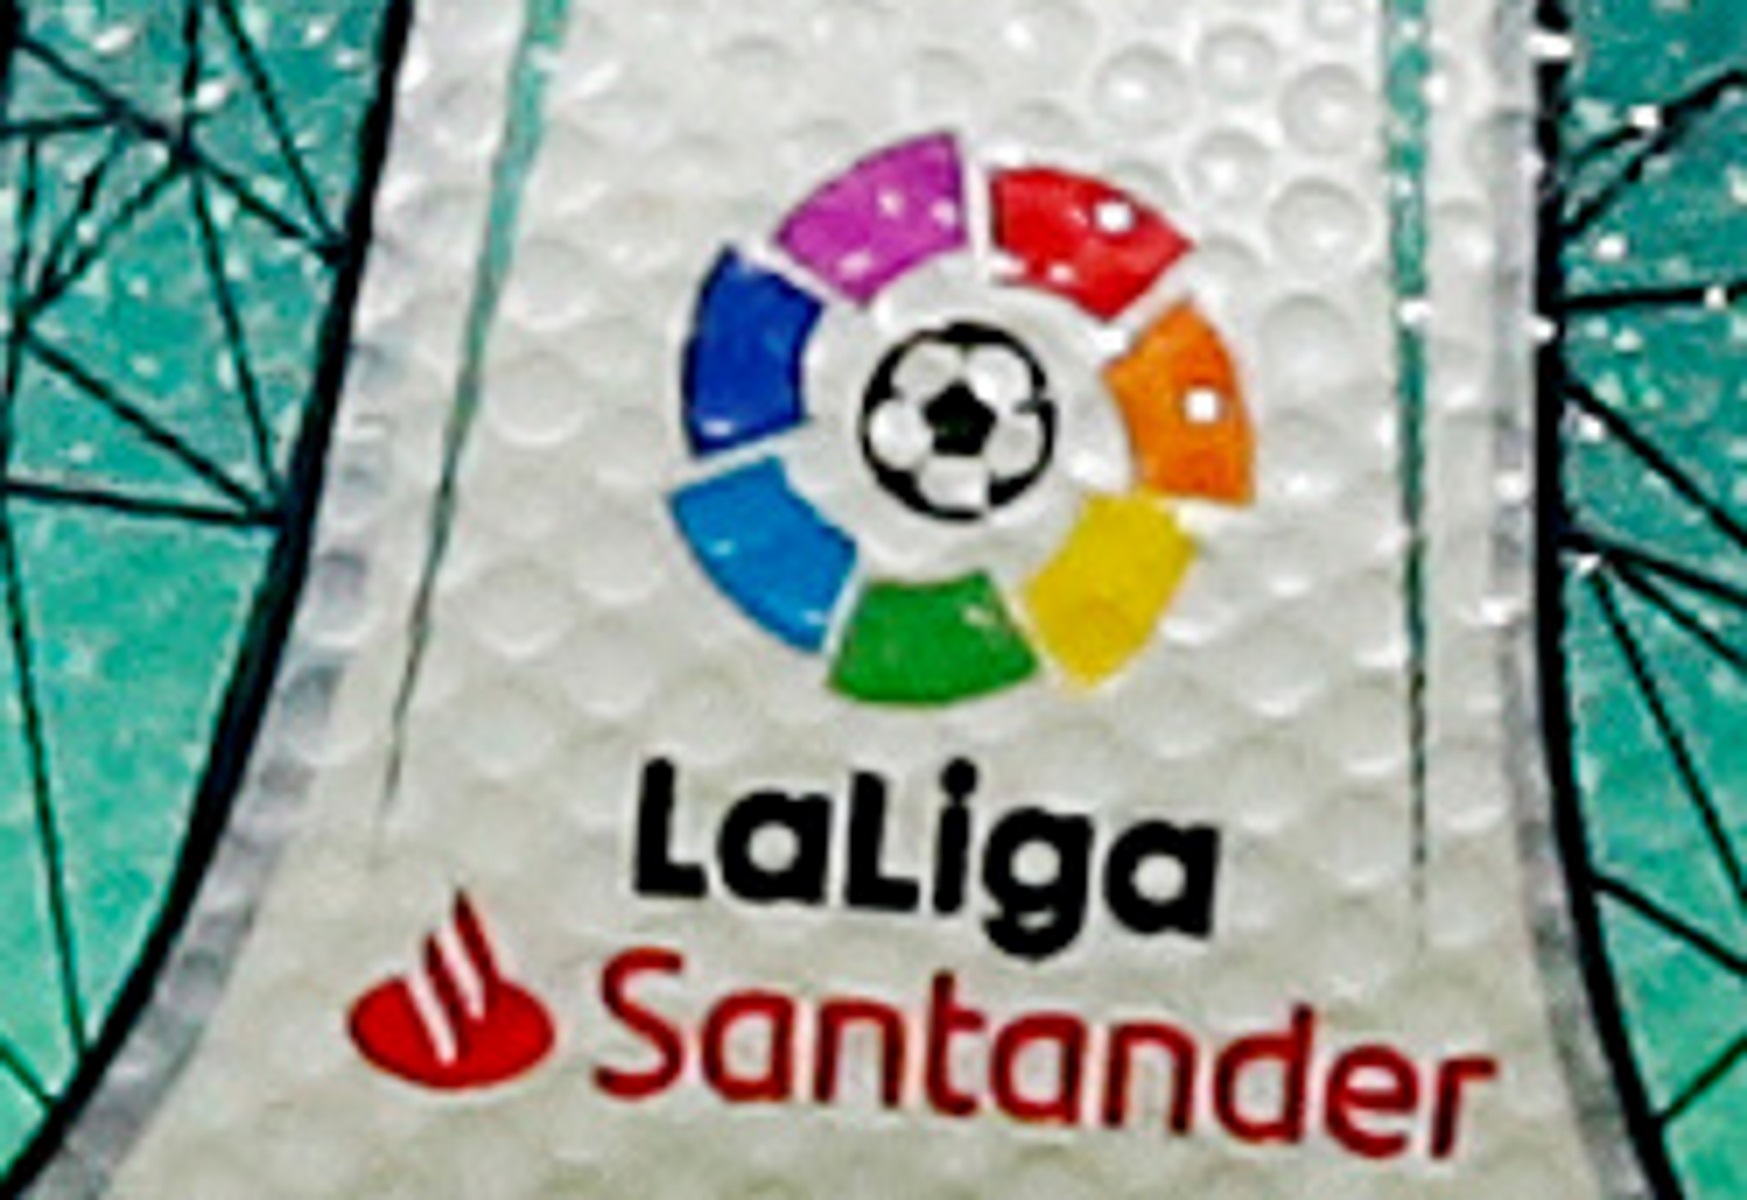 Κορονοϊός: Η La Liga ανακοίνωσε επίσημα 5 κρούσματα στις δύο πρώτες κατηγορίες